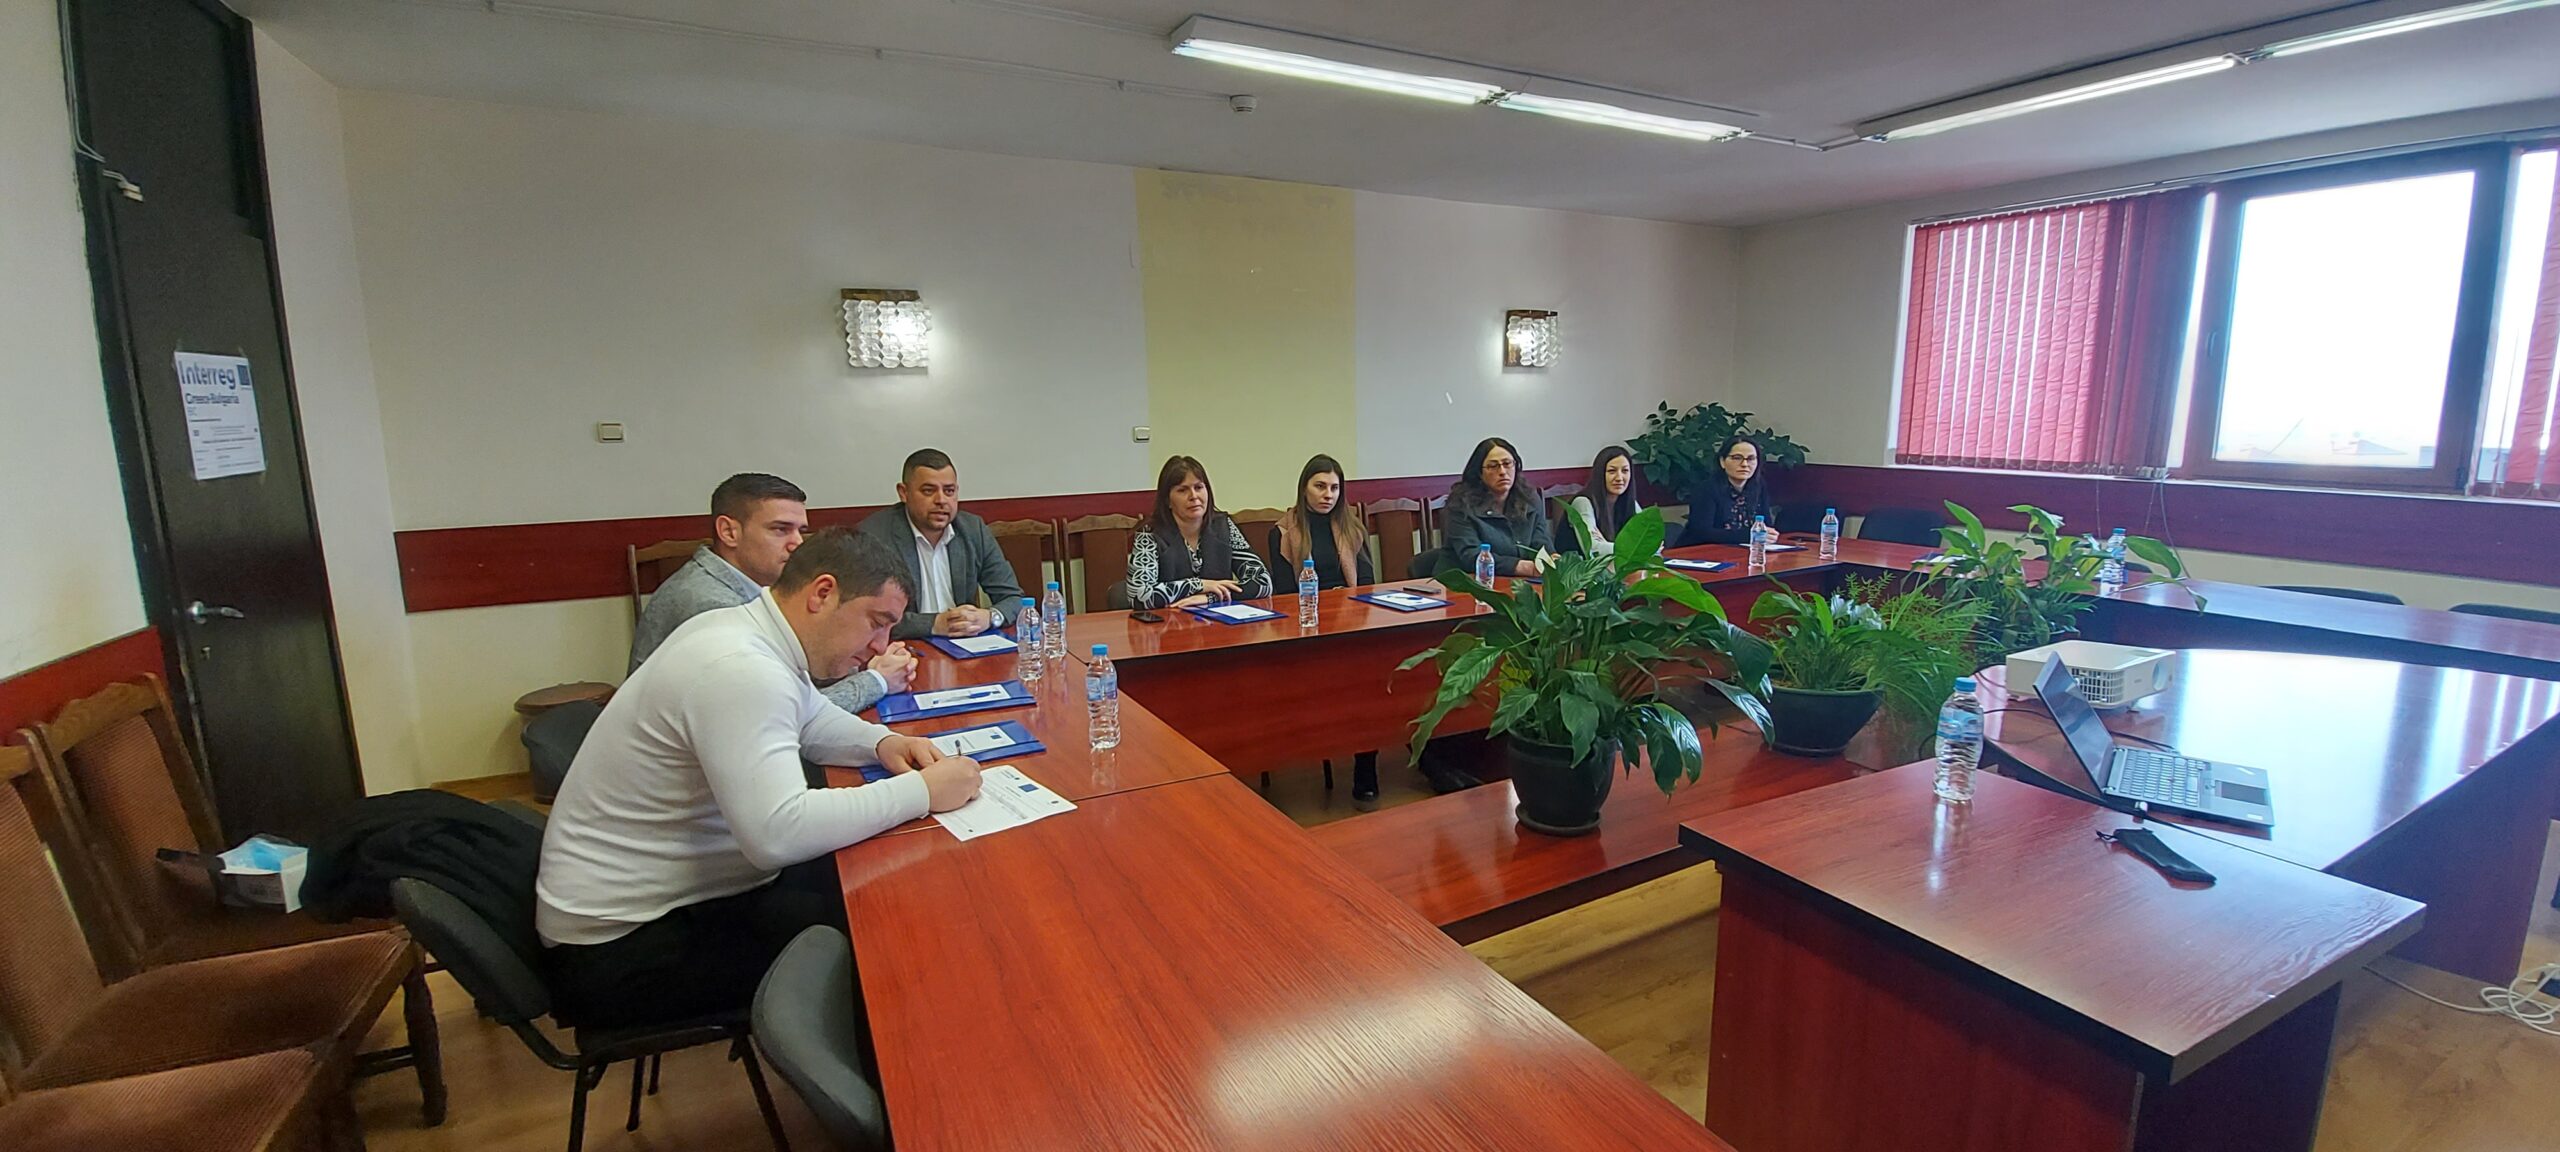 Проведе се информационна среща с представители на местната  власт в община Гърмен